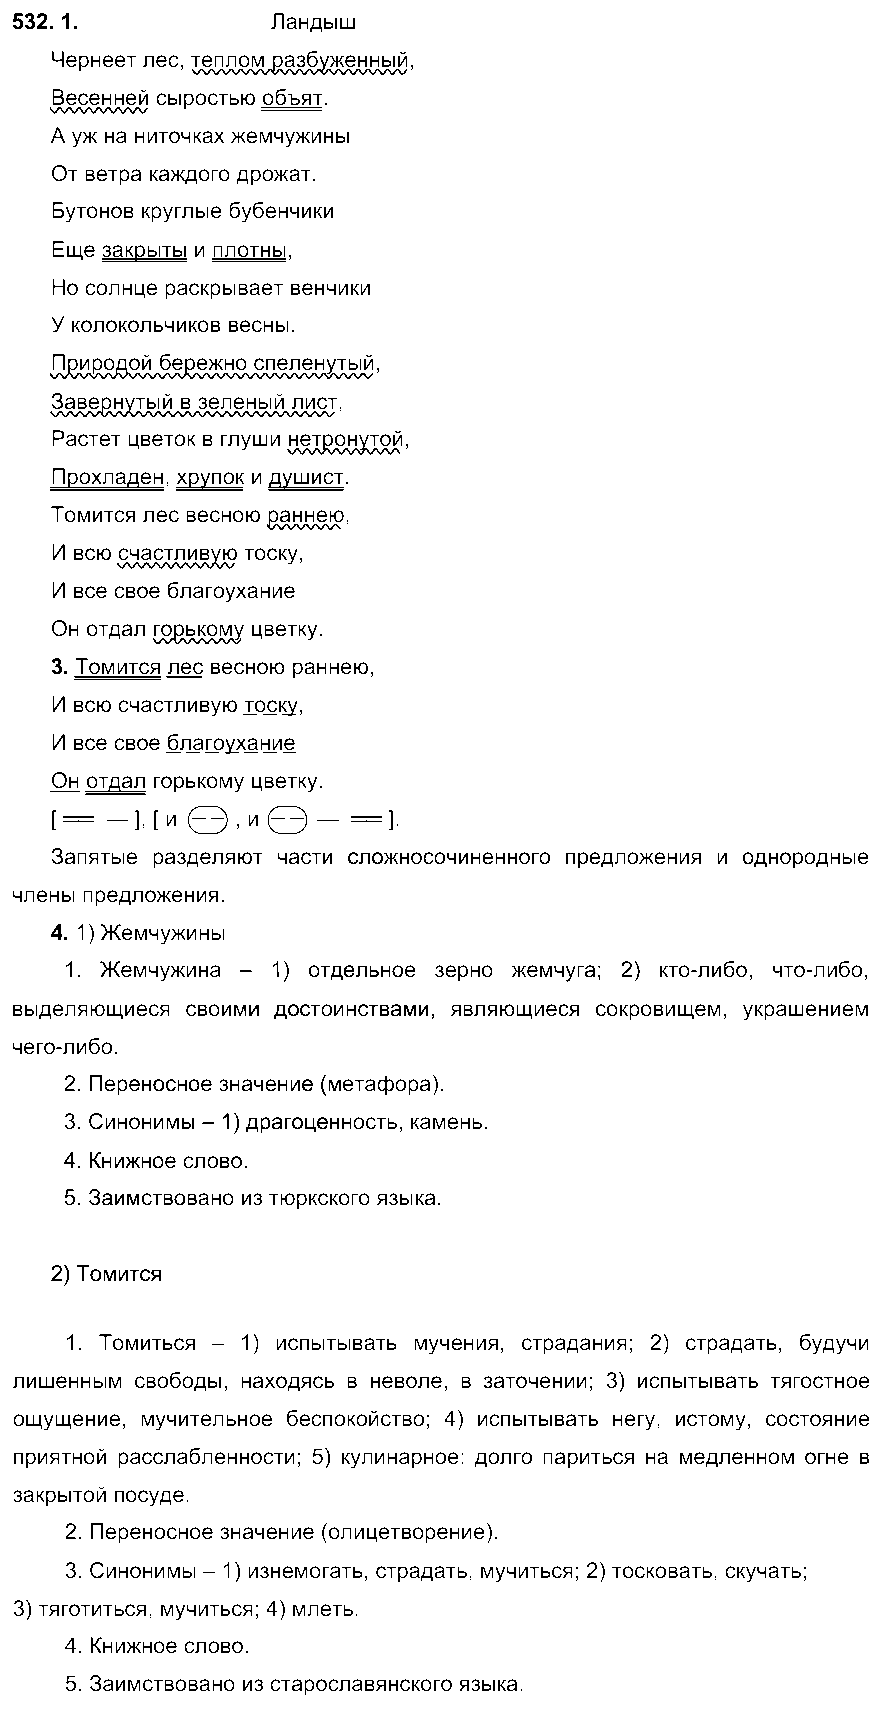 ГДЗ Русский язык 6 класс - 532